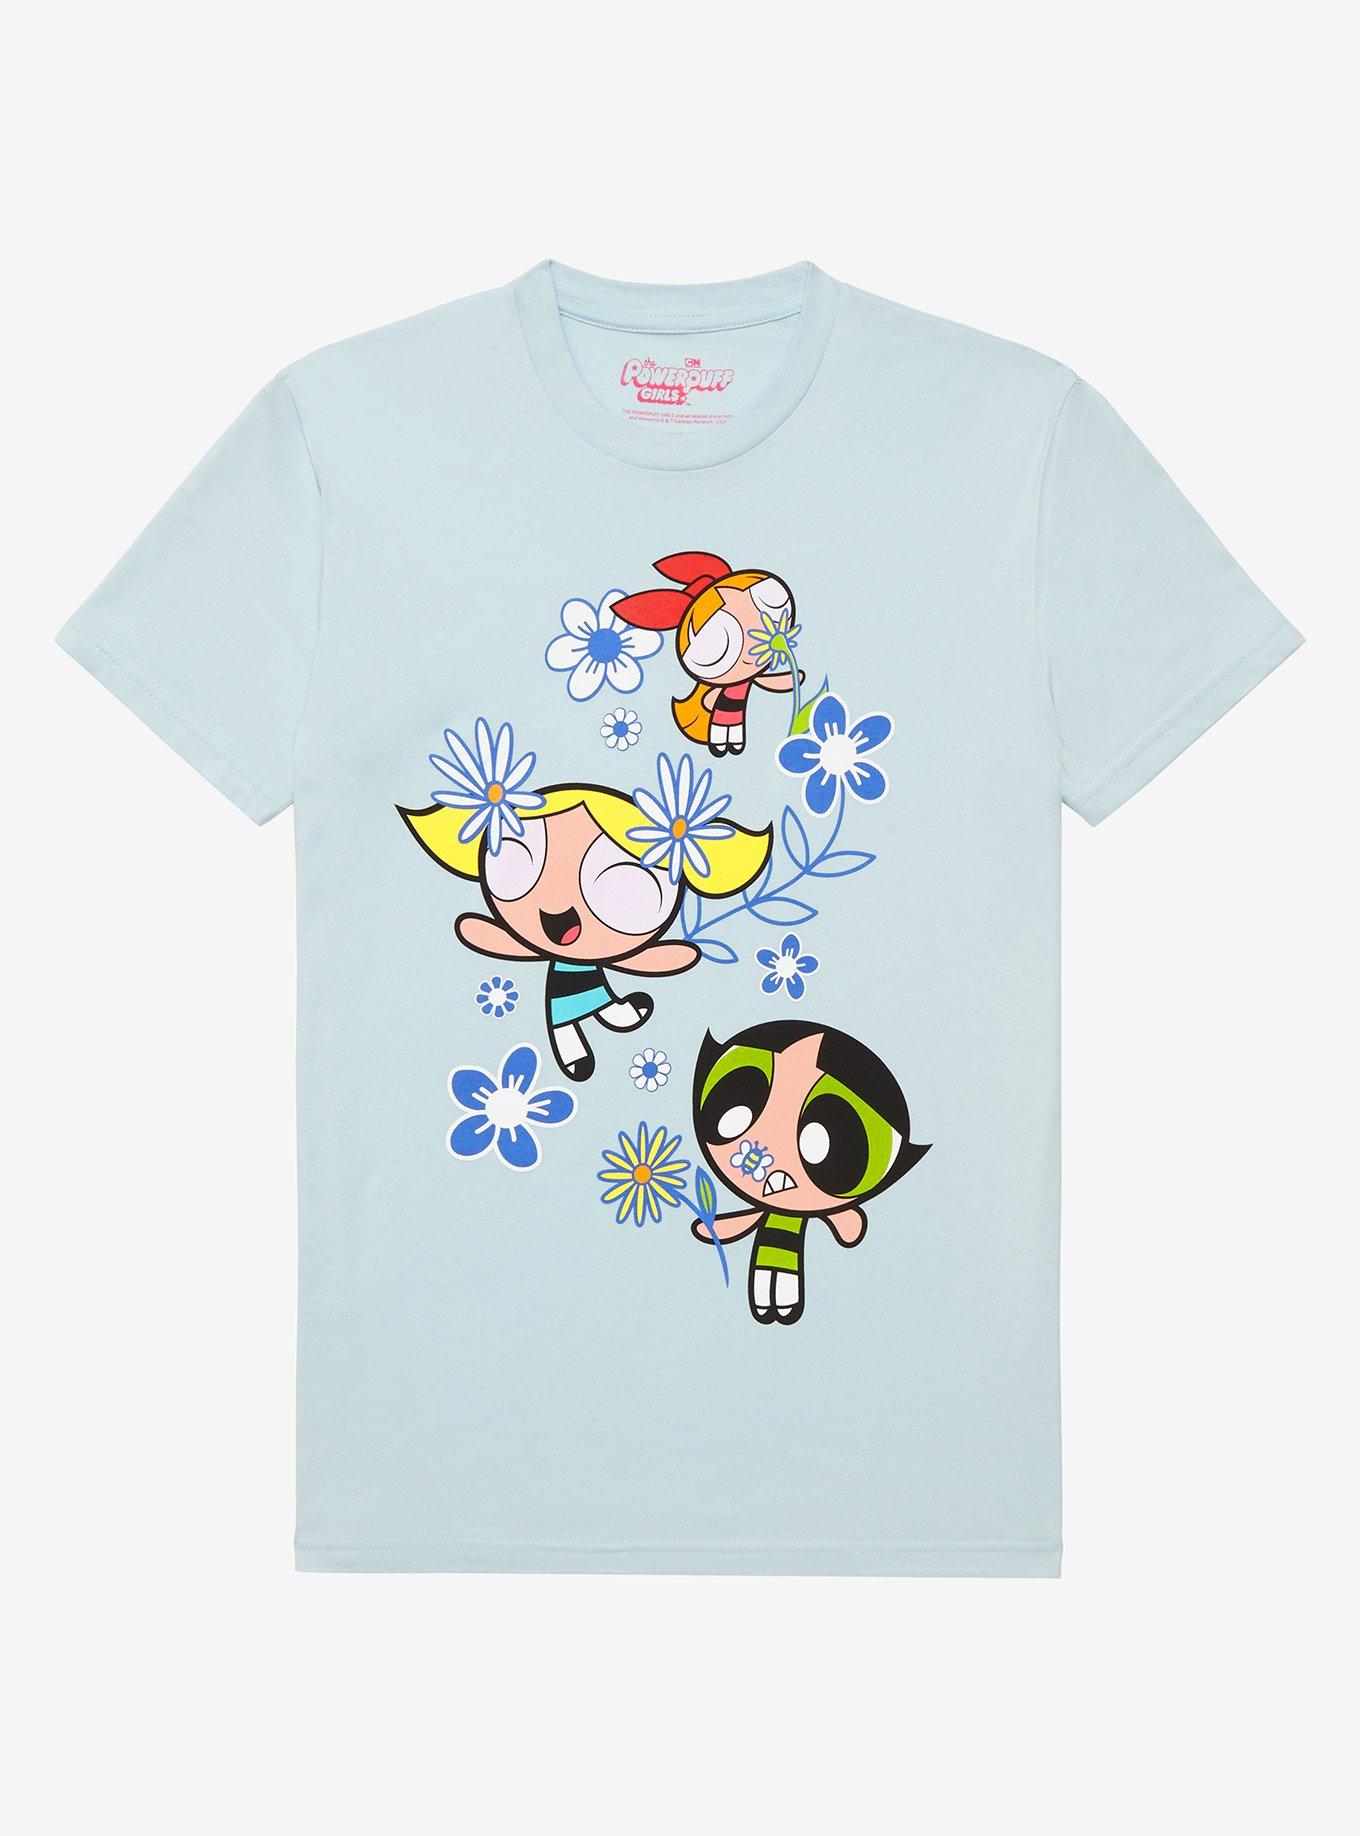 The Powerpuff Girls Flower Boyfriend Fit Girls T-Shirt